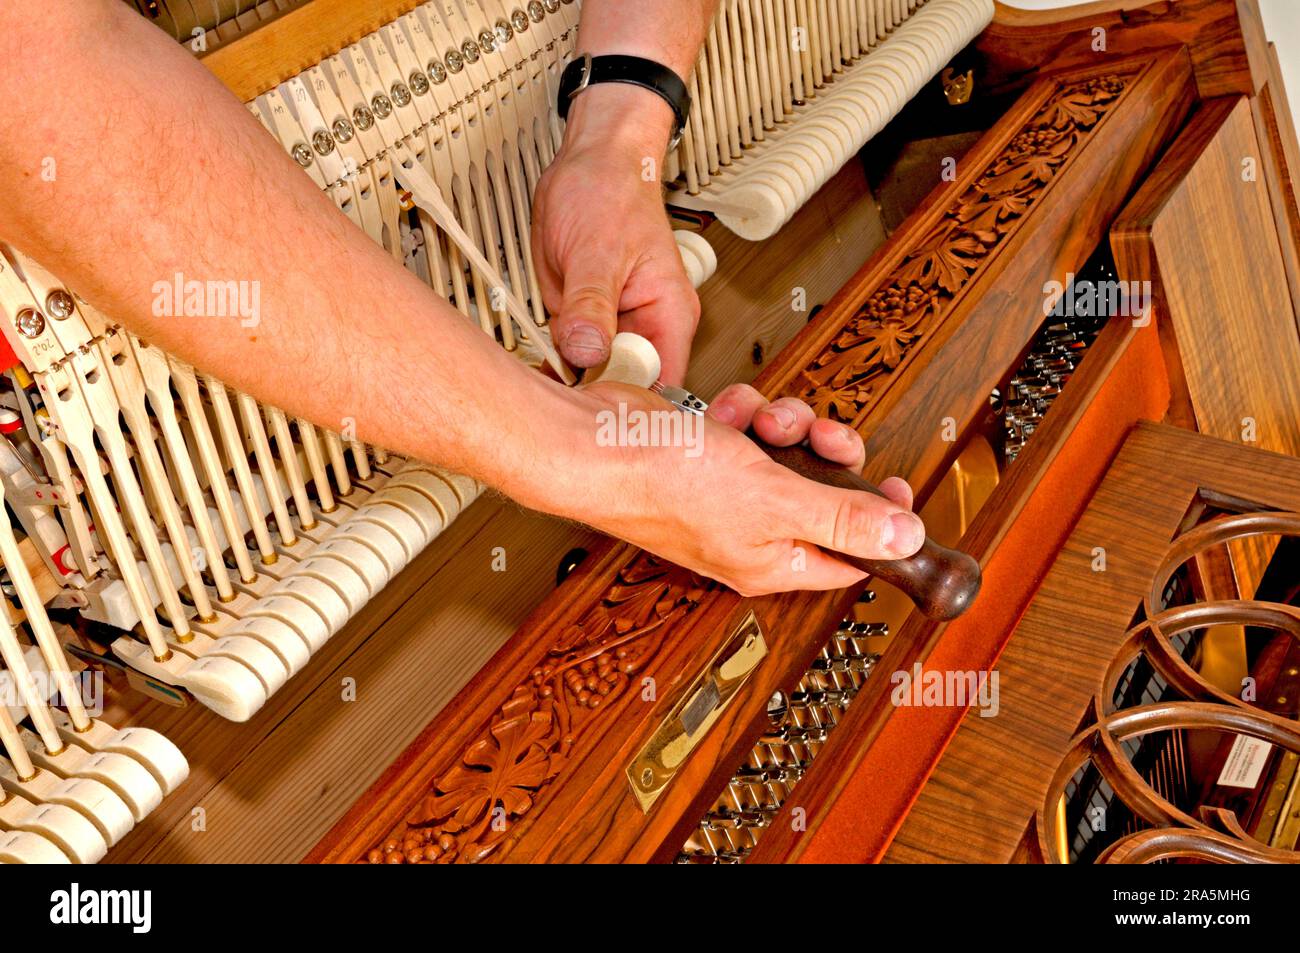 El está afinado, piano, música, hacer música, instrumento musical, tune, instrumento teclado, afinador de Fotografía de stock Alamy